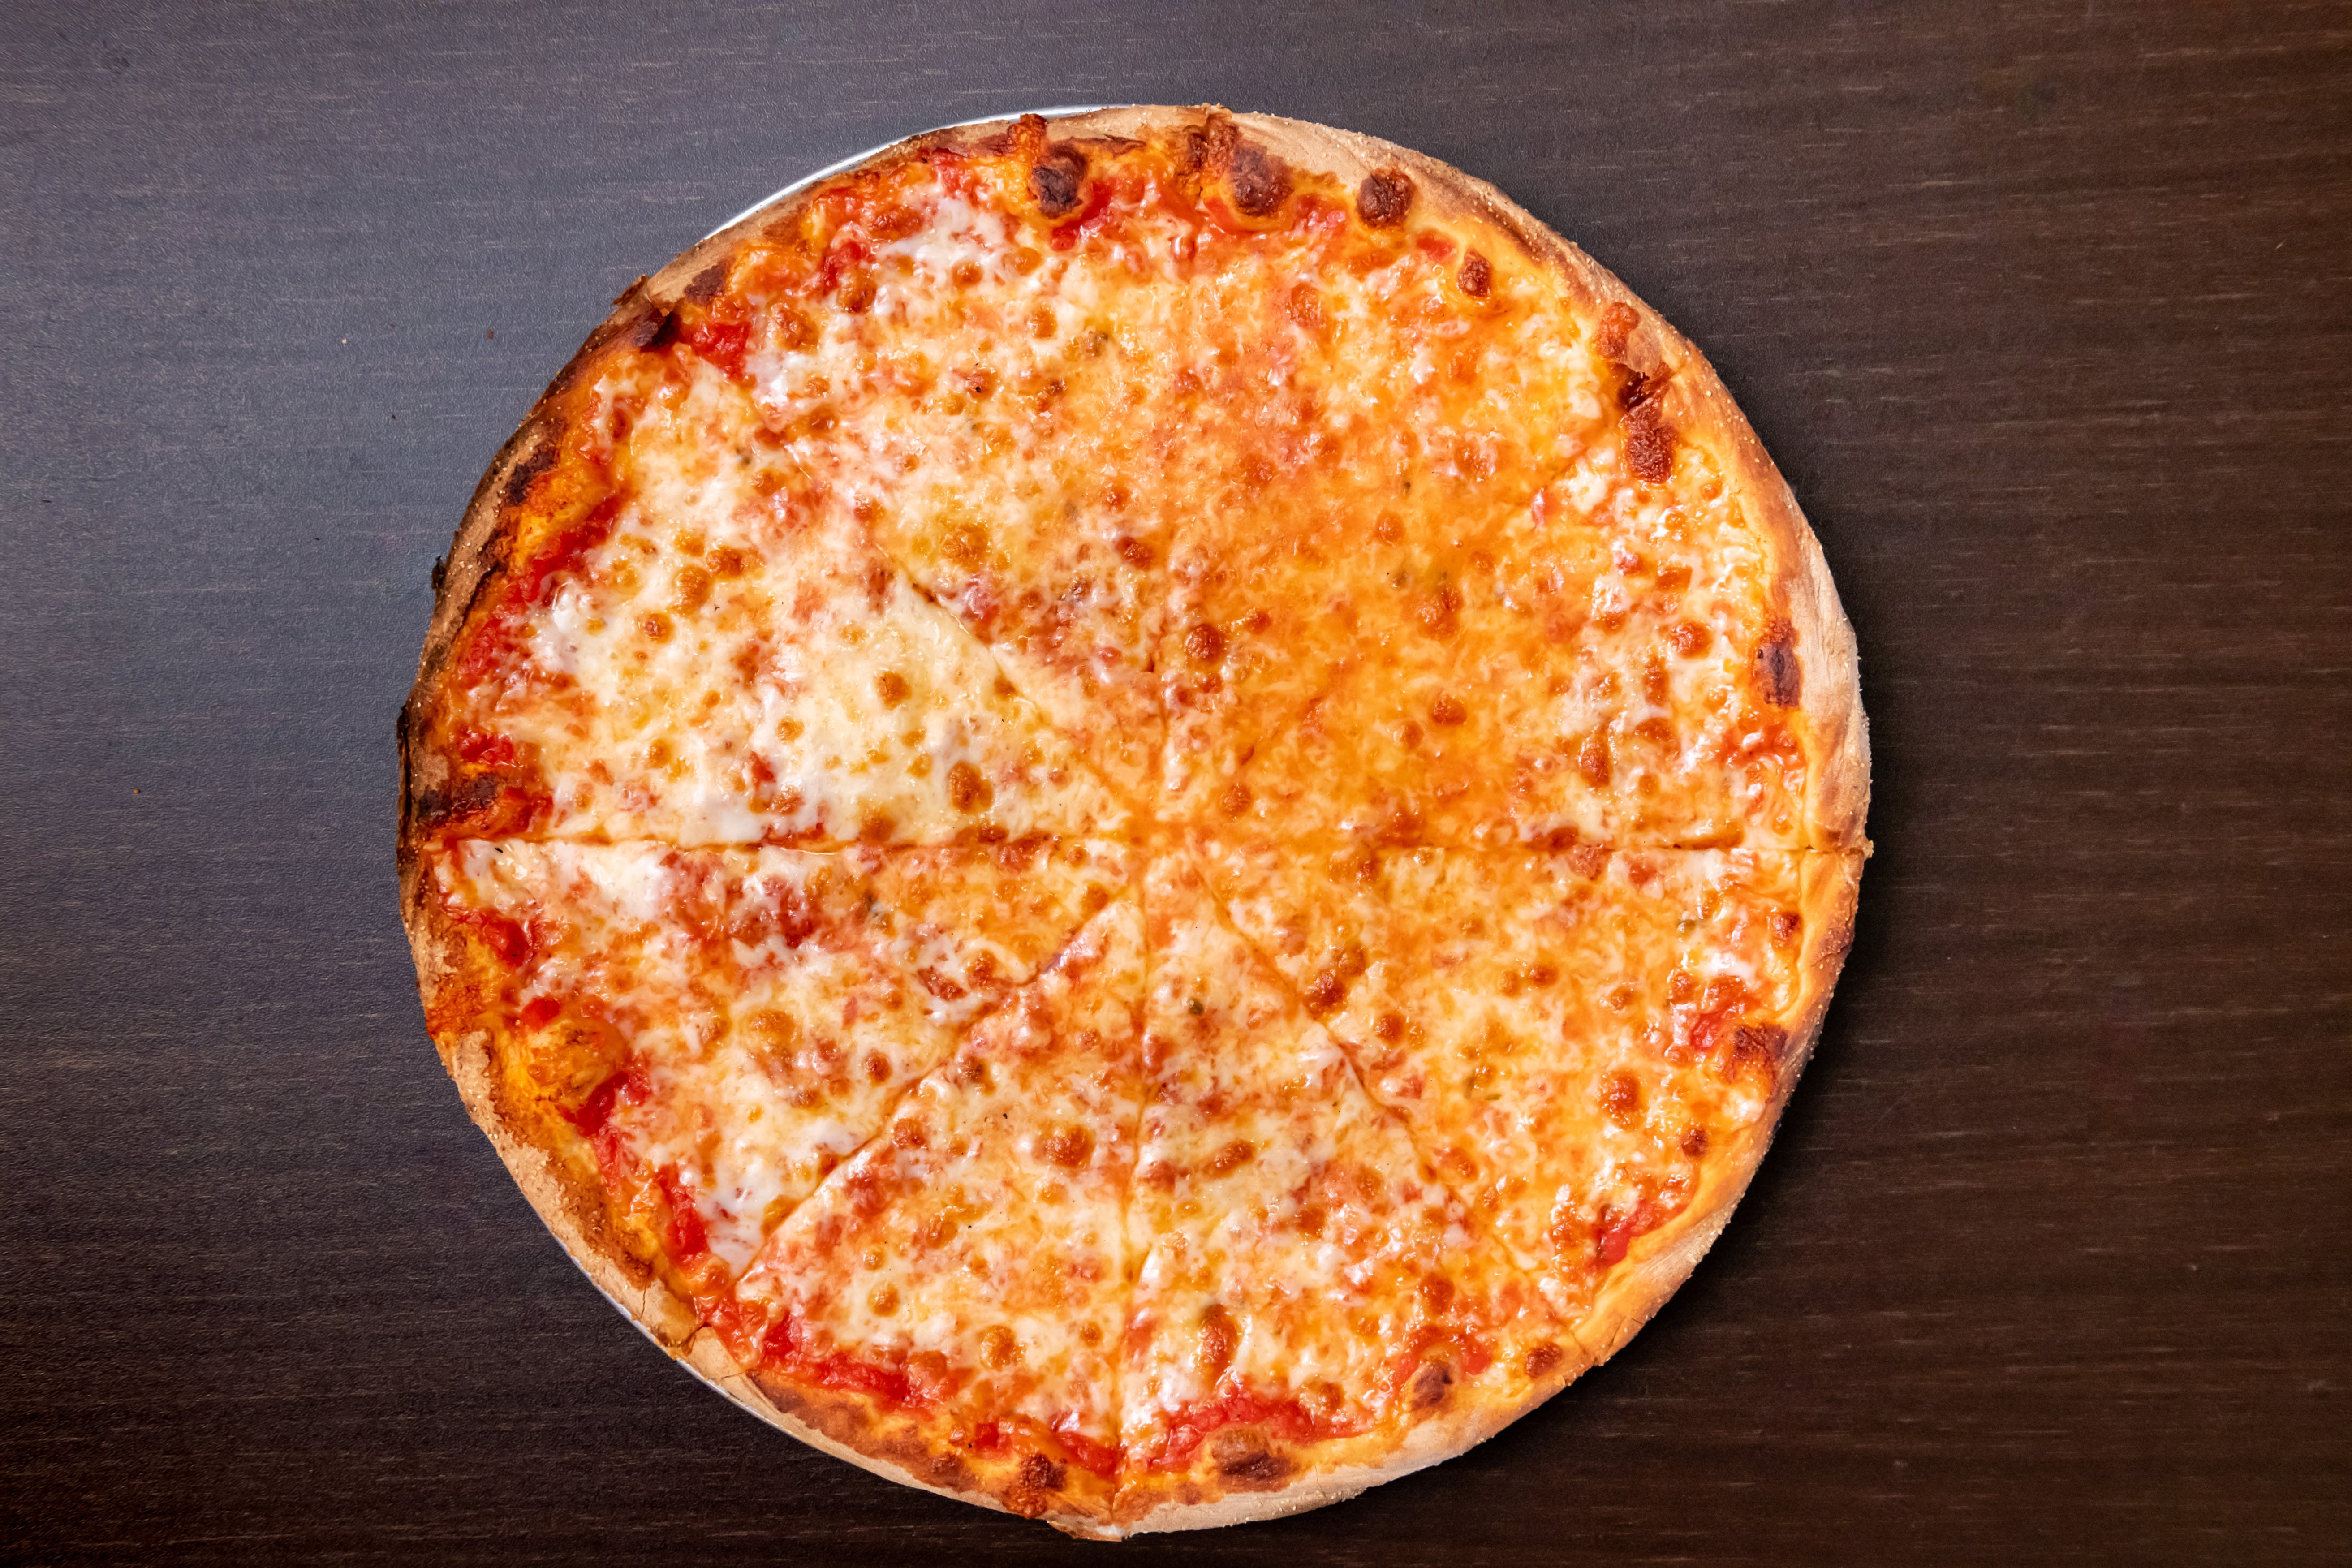 Delizioso Brick Oven Pizza-Stratford CT hero